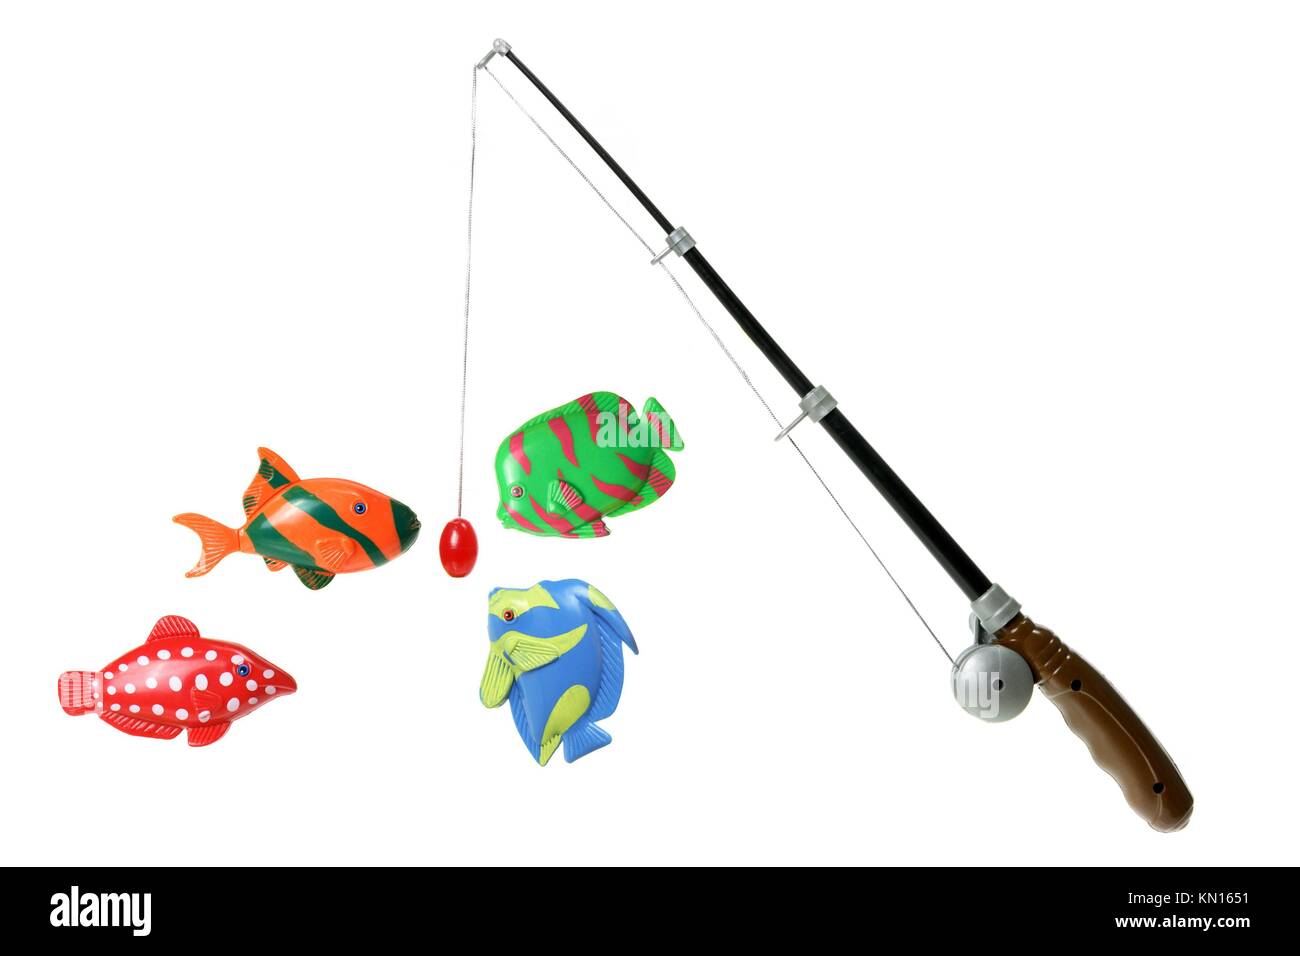 Toy fishing rod immagini e fotografie stock ad alta risoluzione - Alamy